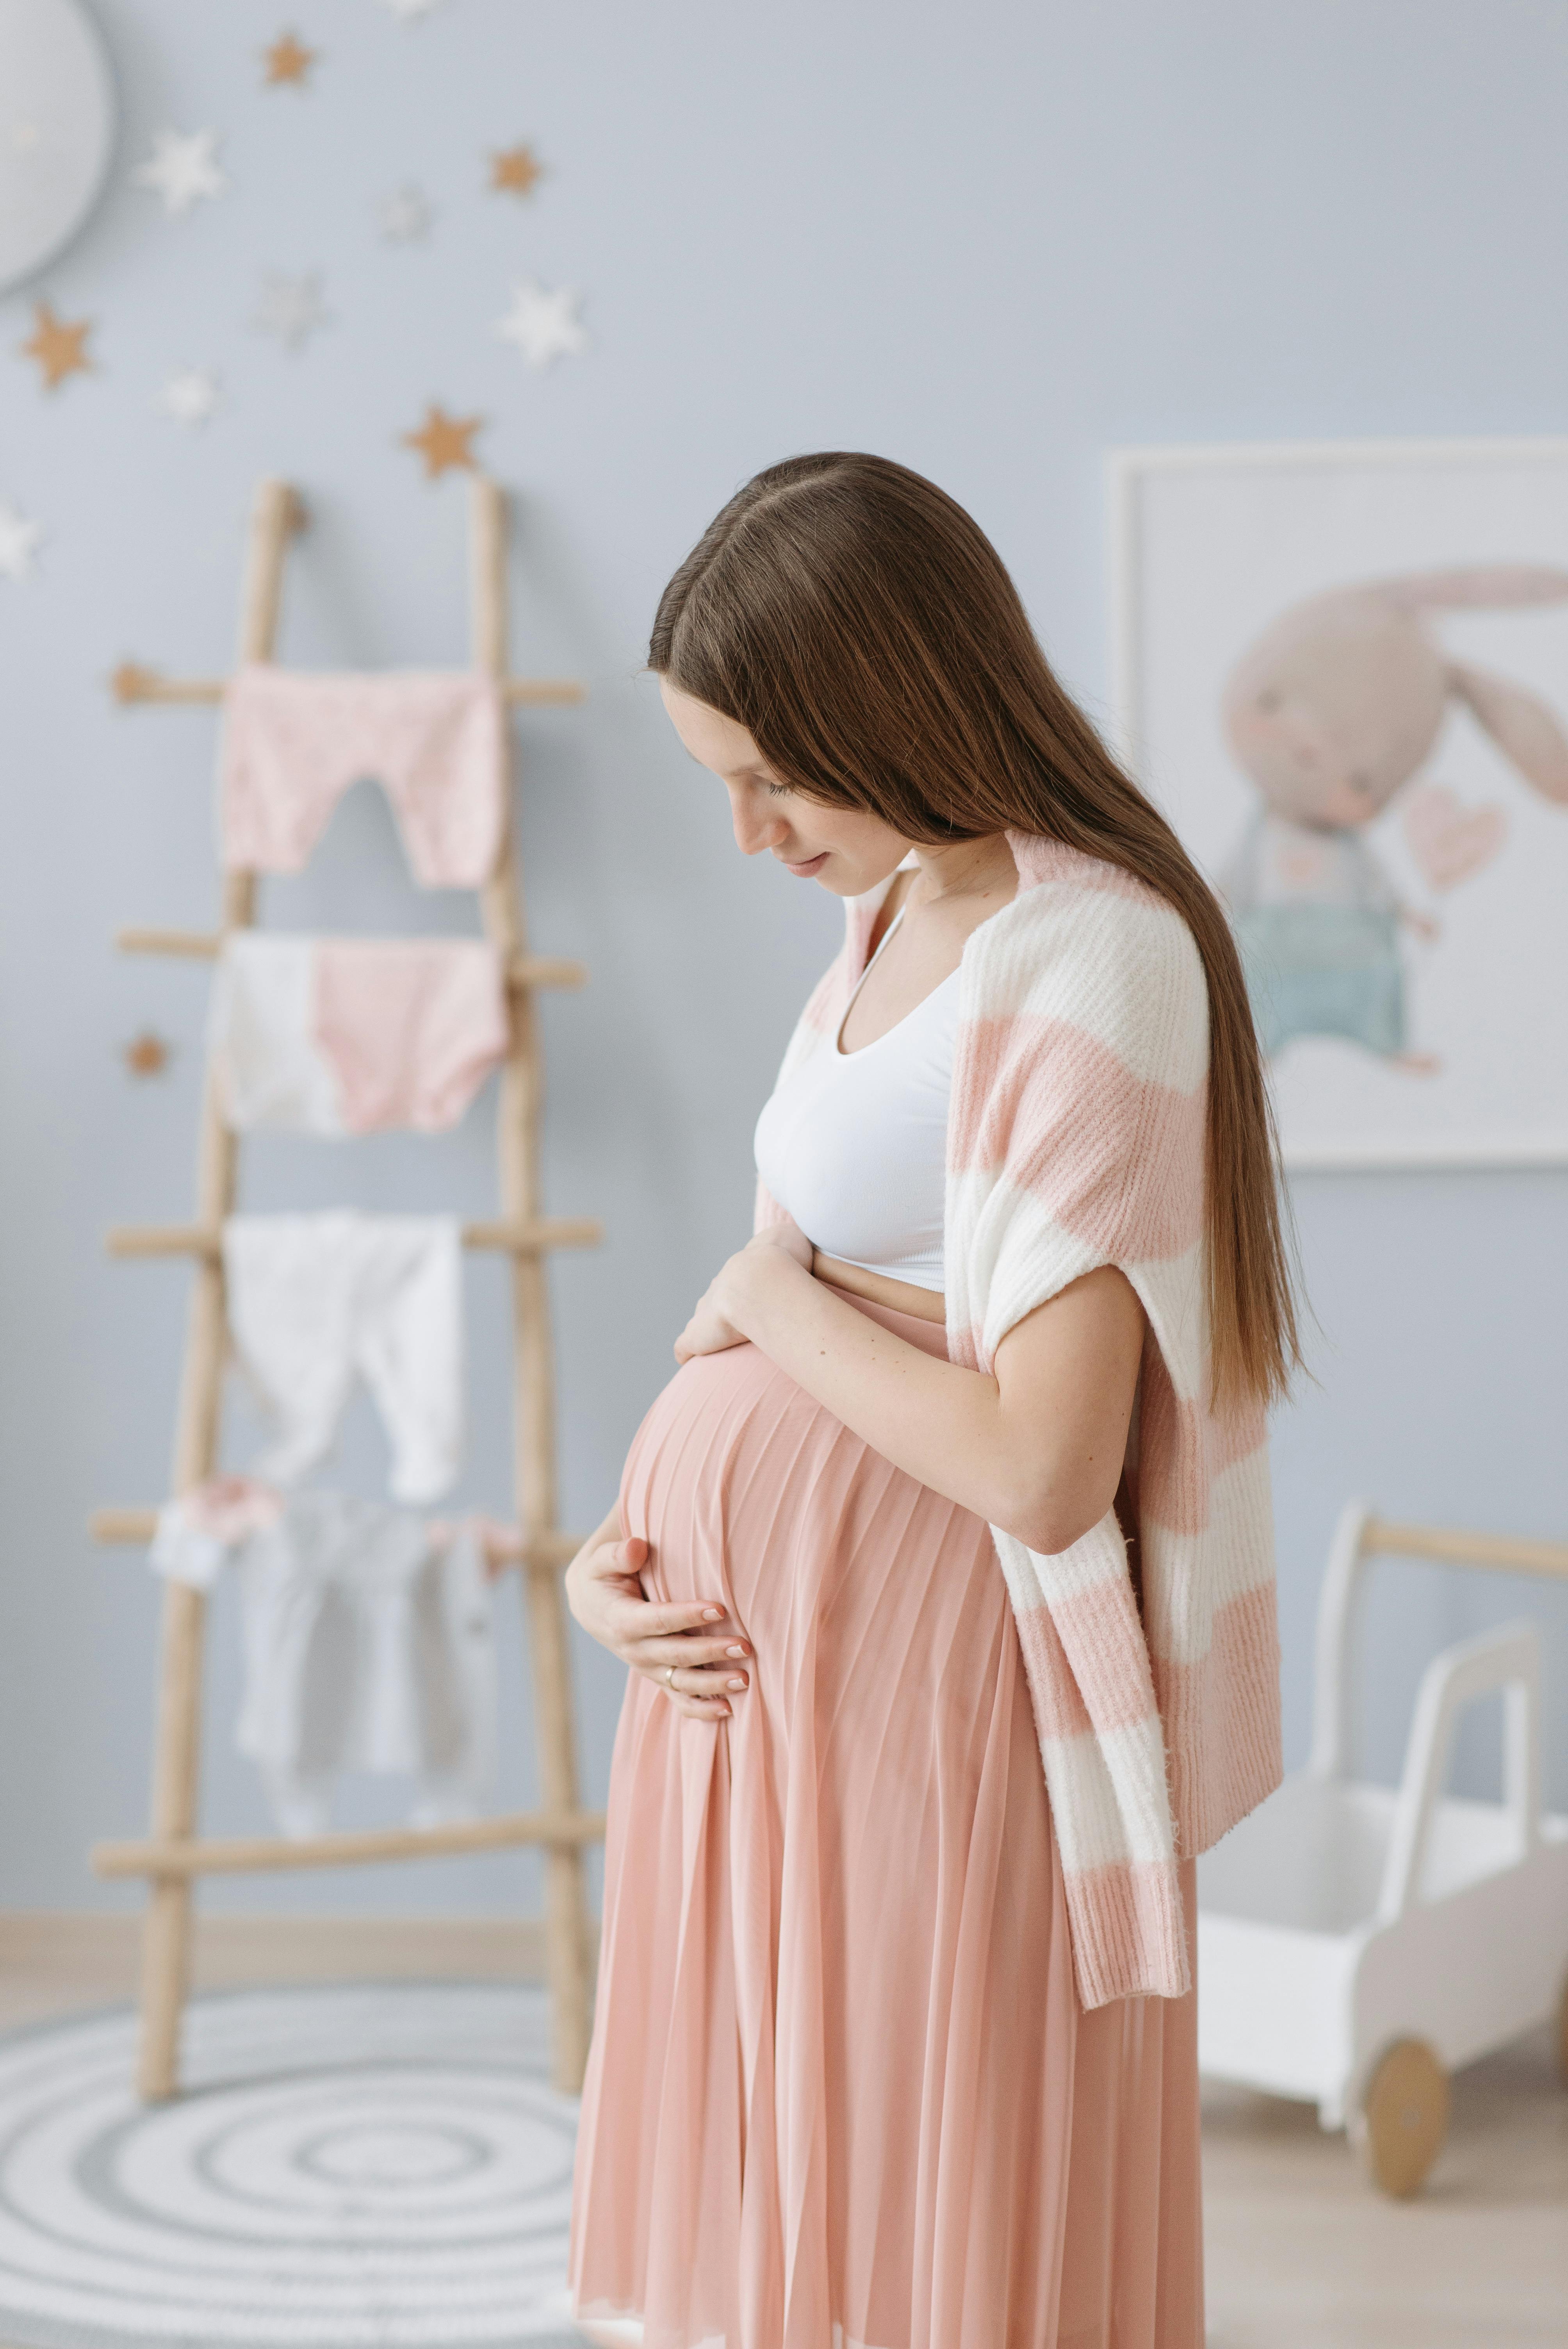 Eine schwangere Frau hält ihren Bauch im Zimmer ihres zukünftigen Babys | Quelle: Pexels